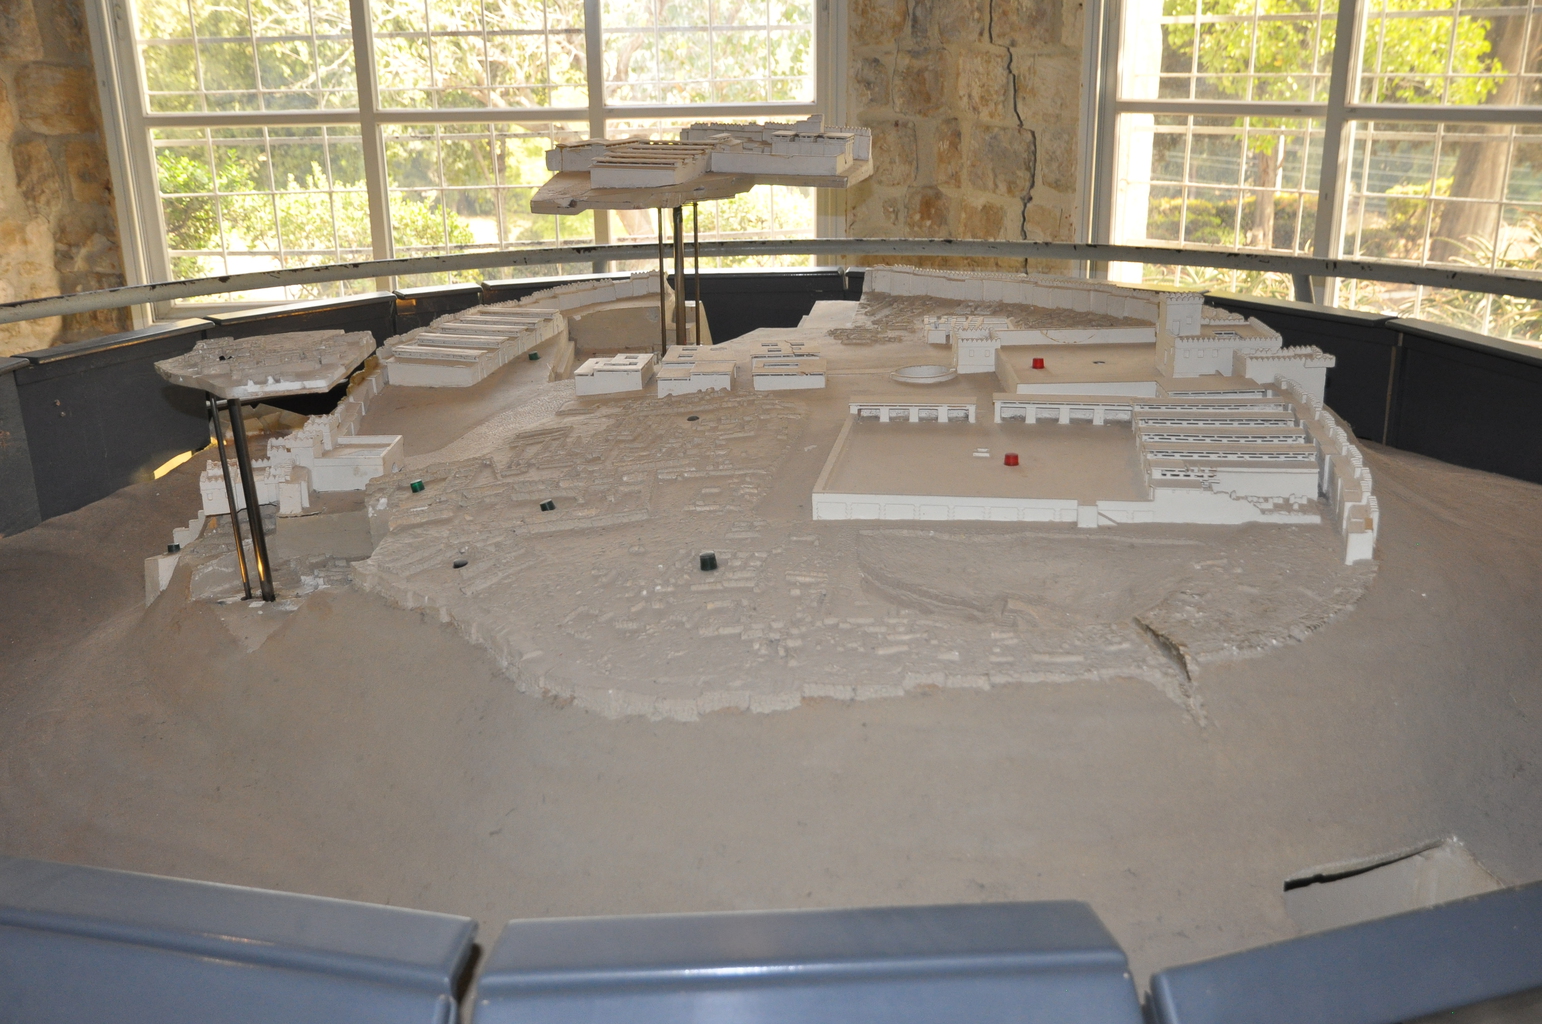 Макет Мегиддо, вид на западную часть